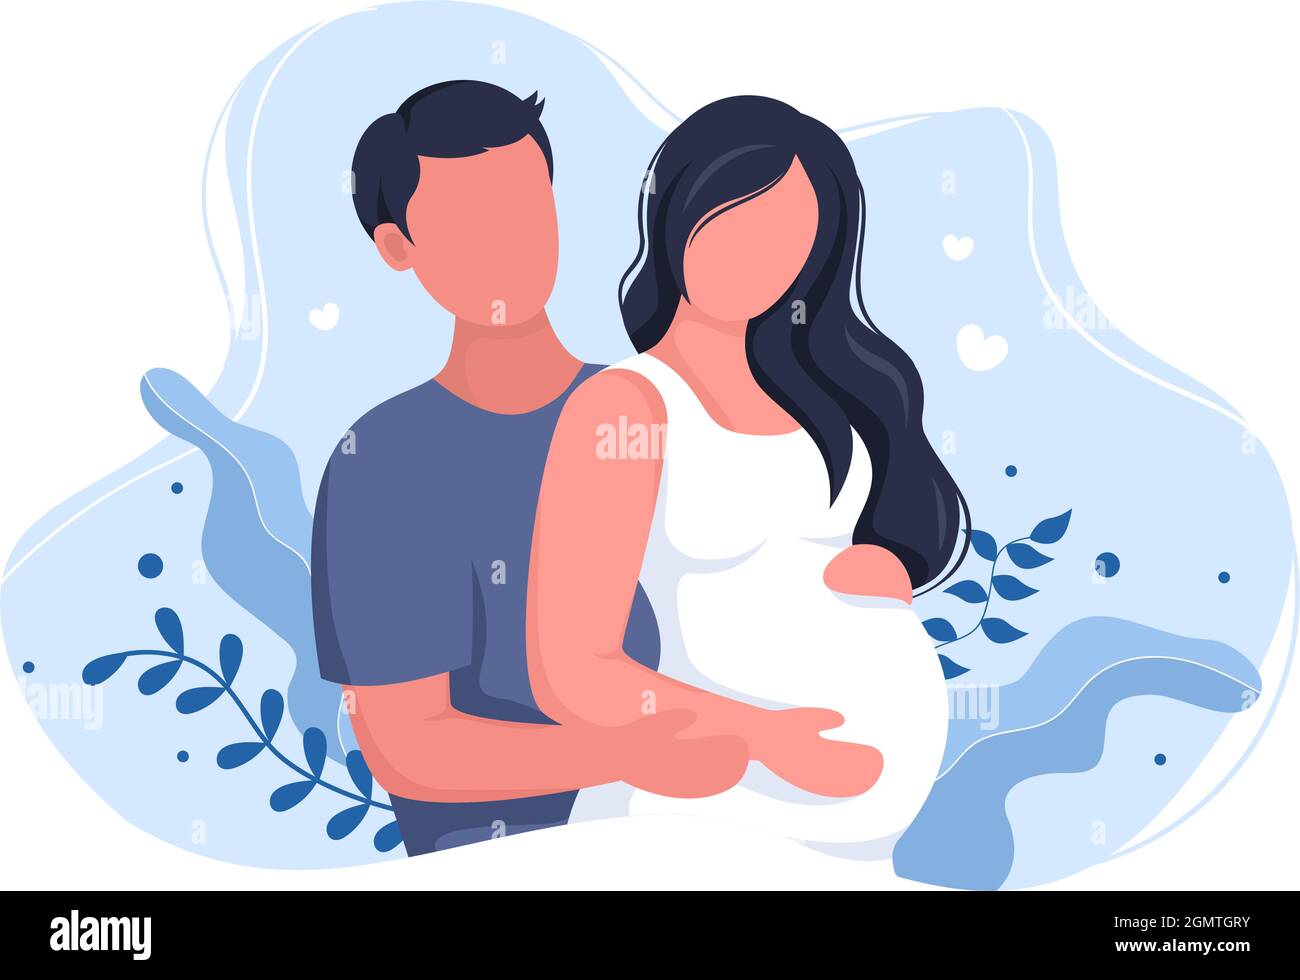 Schwanger Paar Hintergrund Vektor Illustration mit Einem Mann nimmt Pflege und Hugs seine Frau oder Mutter während warten auf Geburt in Flat Design Style Stock Vektor